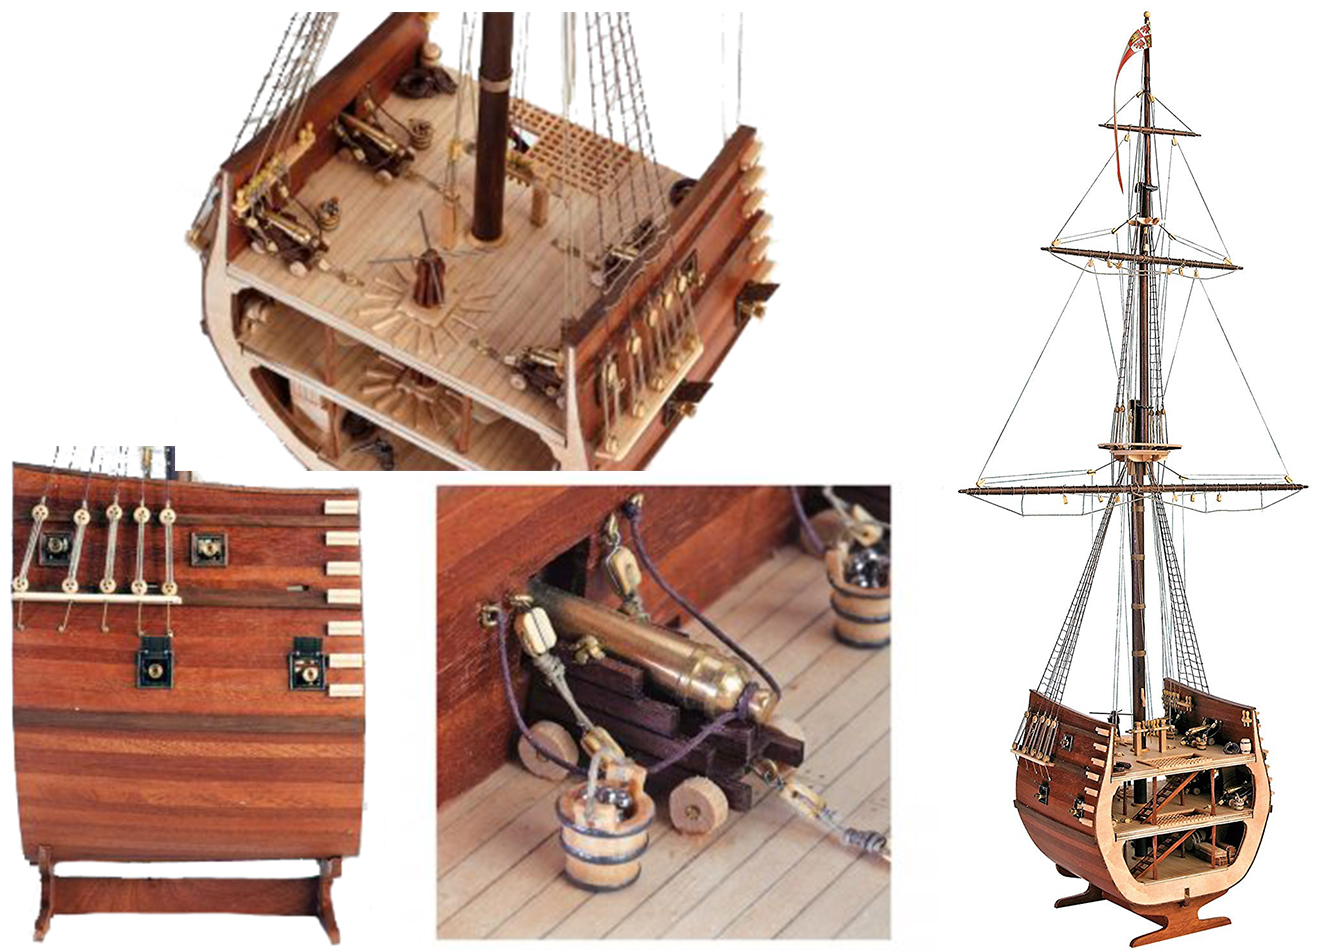 Maqueta de barco pesquero en madera – Enbata – Ropa marinera Moda Nautica  en Donostia